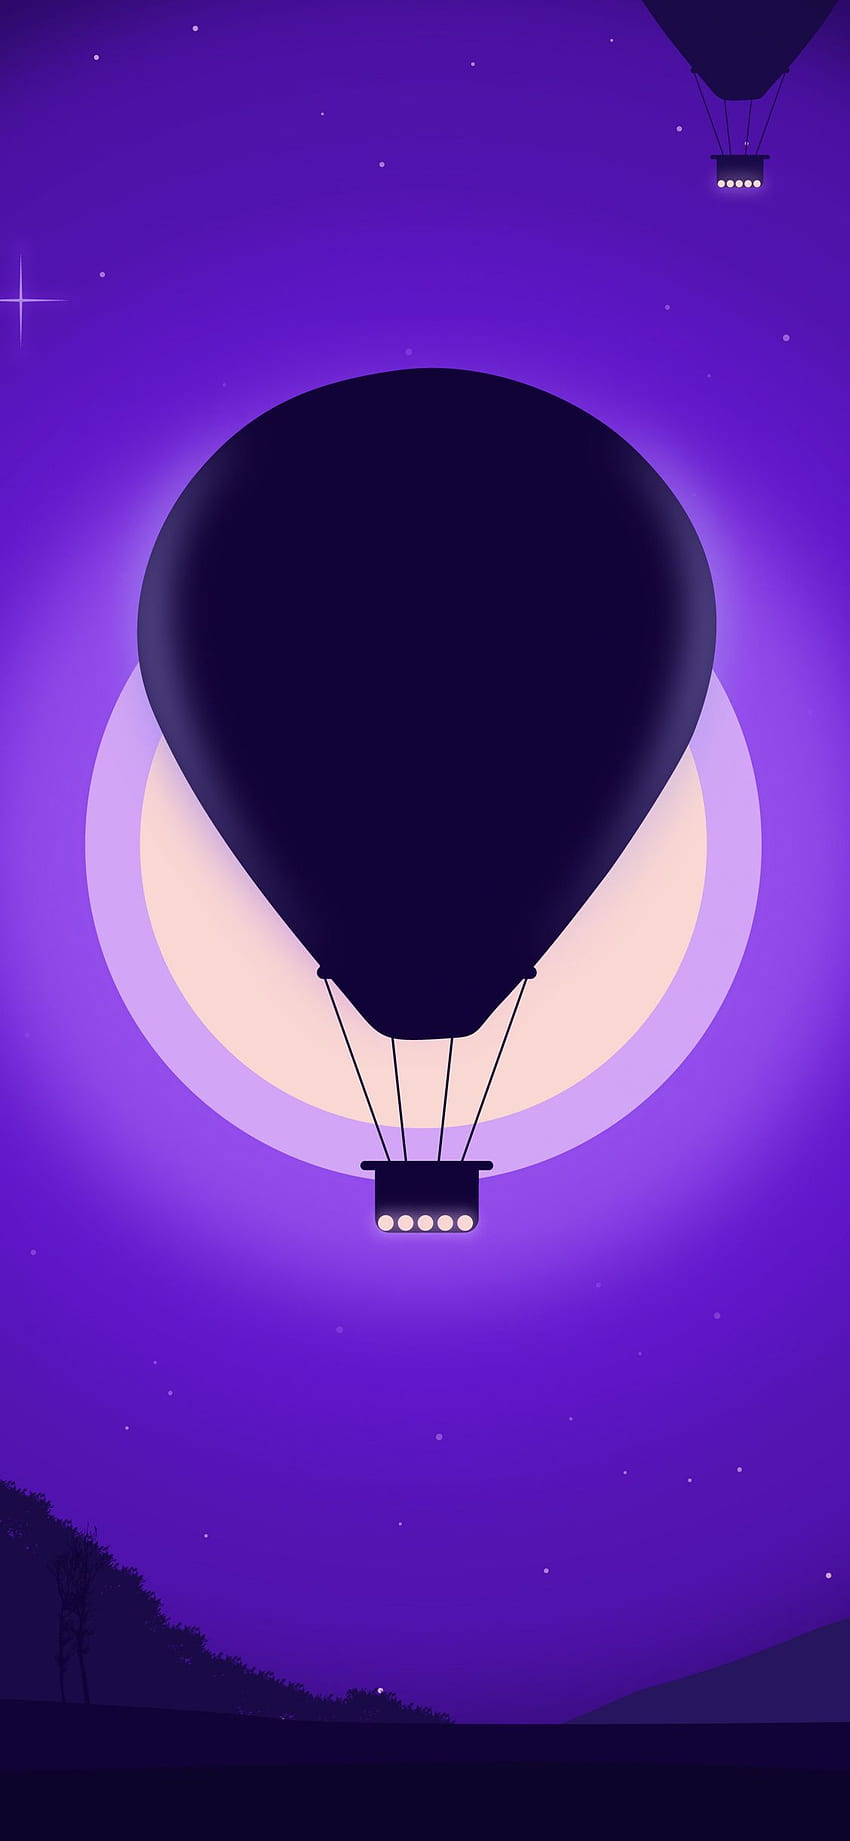 Balon Na Ogrzane Powietrze, Fioletowy Ciemny, Sylwetka. Ilustracja balon, balon na ogrzane powietrze, balon powietrzny, fioletowe balony Tapeta na telefon HD